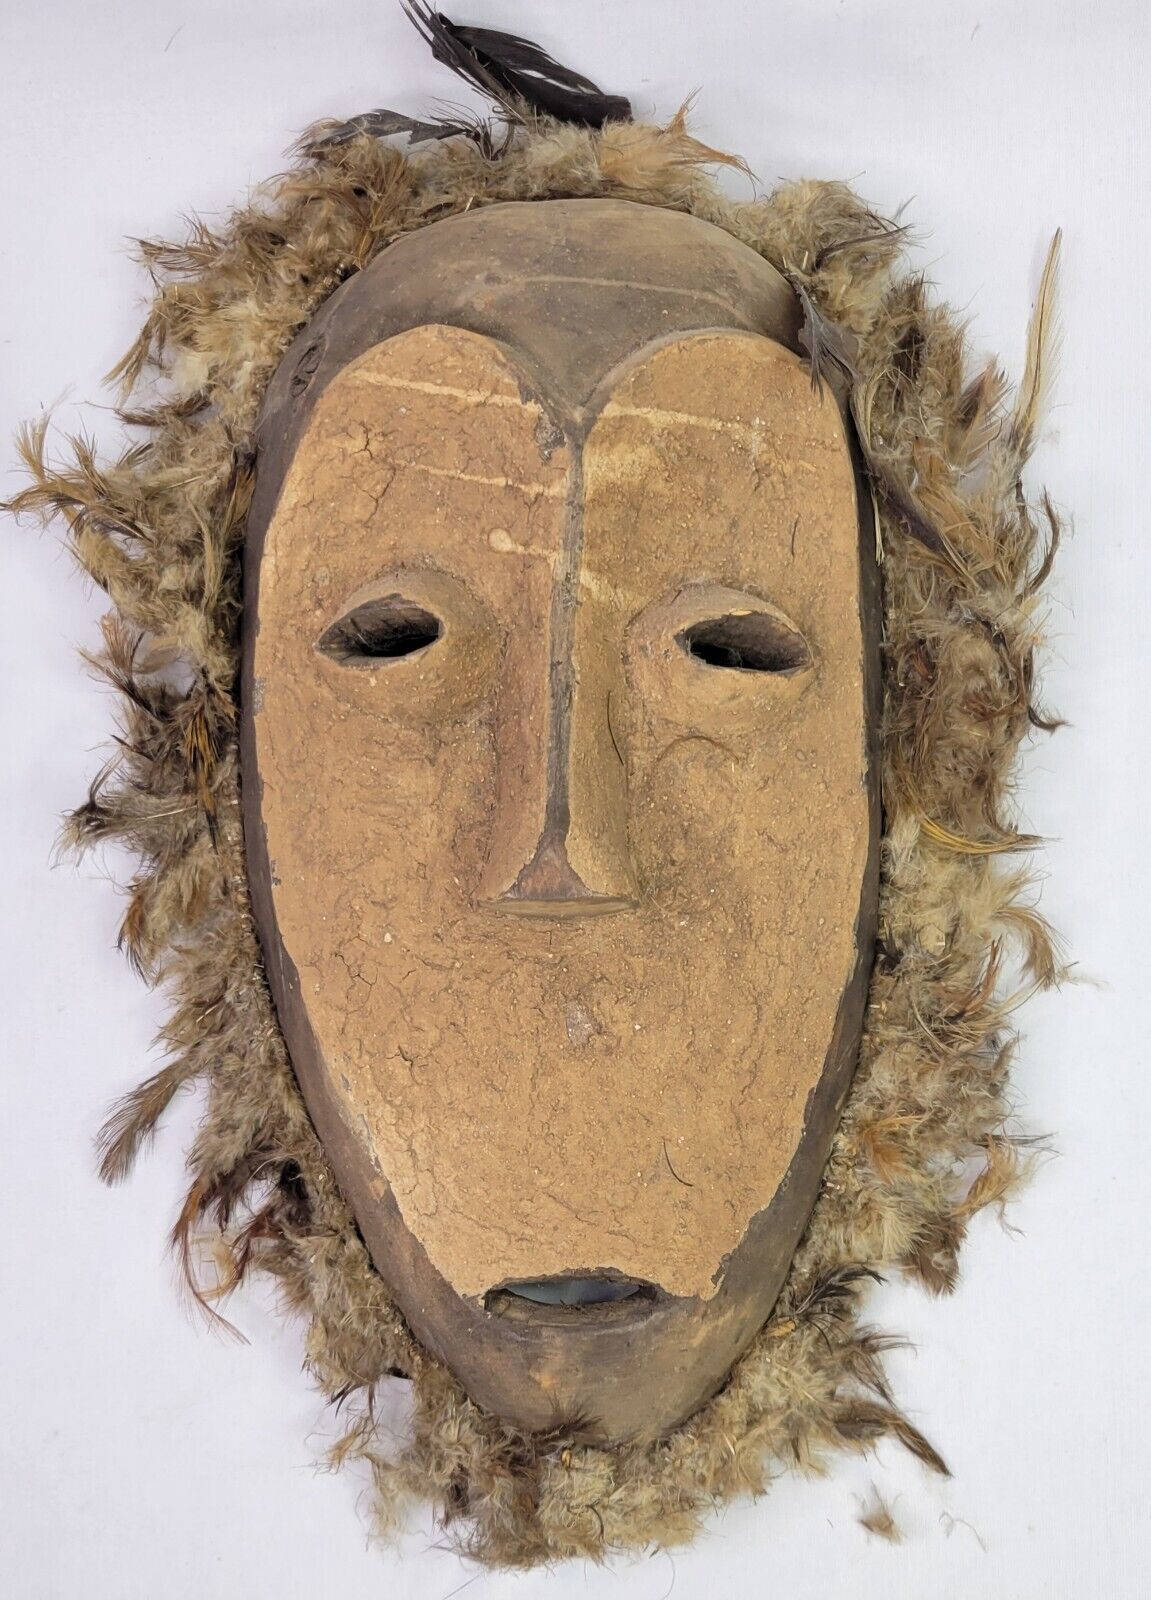 Antique African Lega Carved Wooden & Feathers Mask - Primitive Folk Art - 1950s